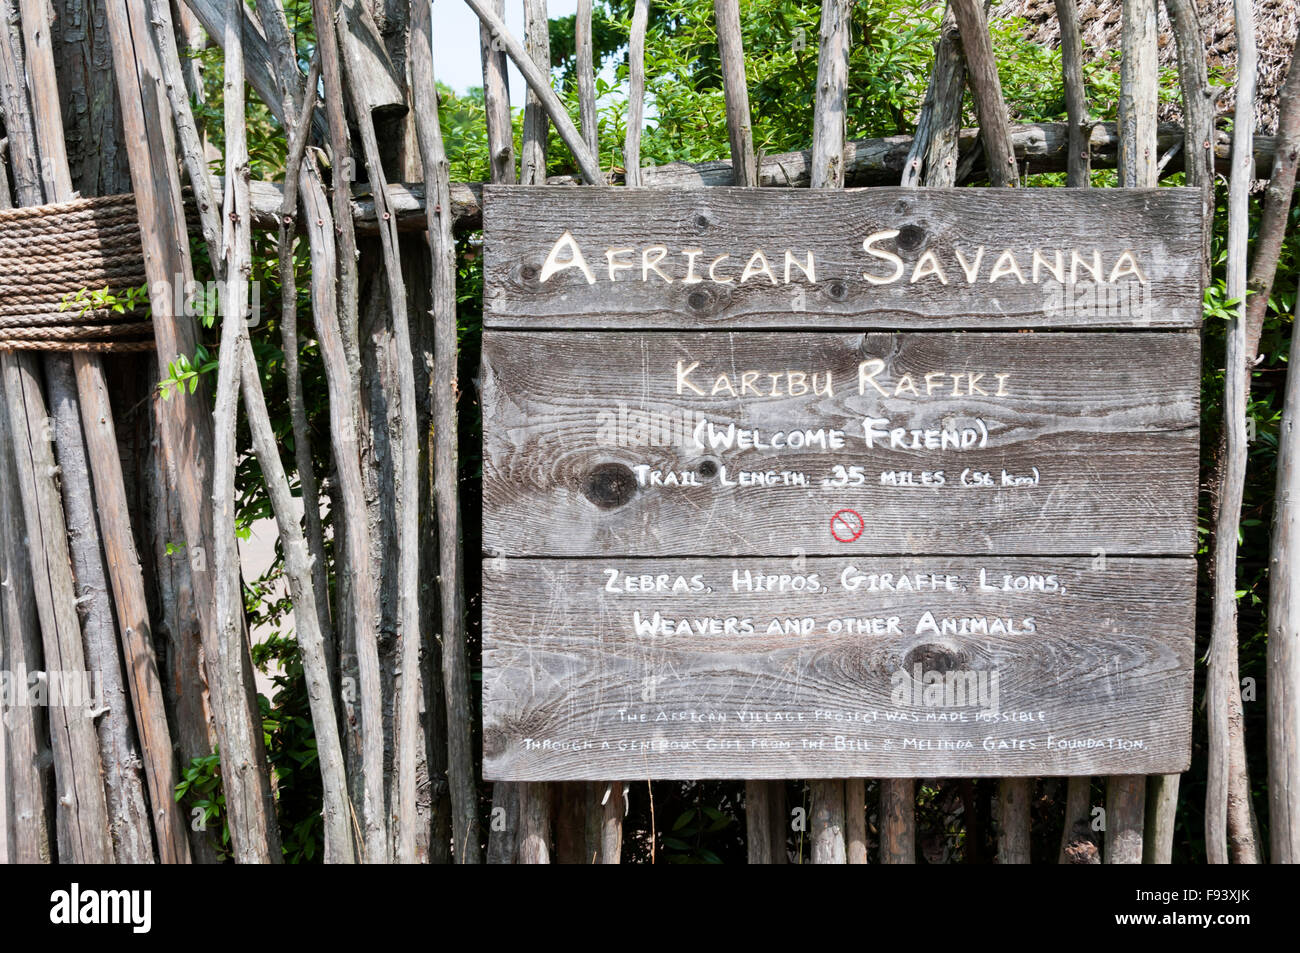 Ein Schild am Seattle Zoo berichtet, daß das afrikanische Dorf-Projekt durch einen Zuschuss von Bill & Melinda-Gates-Stiftung unterstützt wurde. Stockfoto